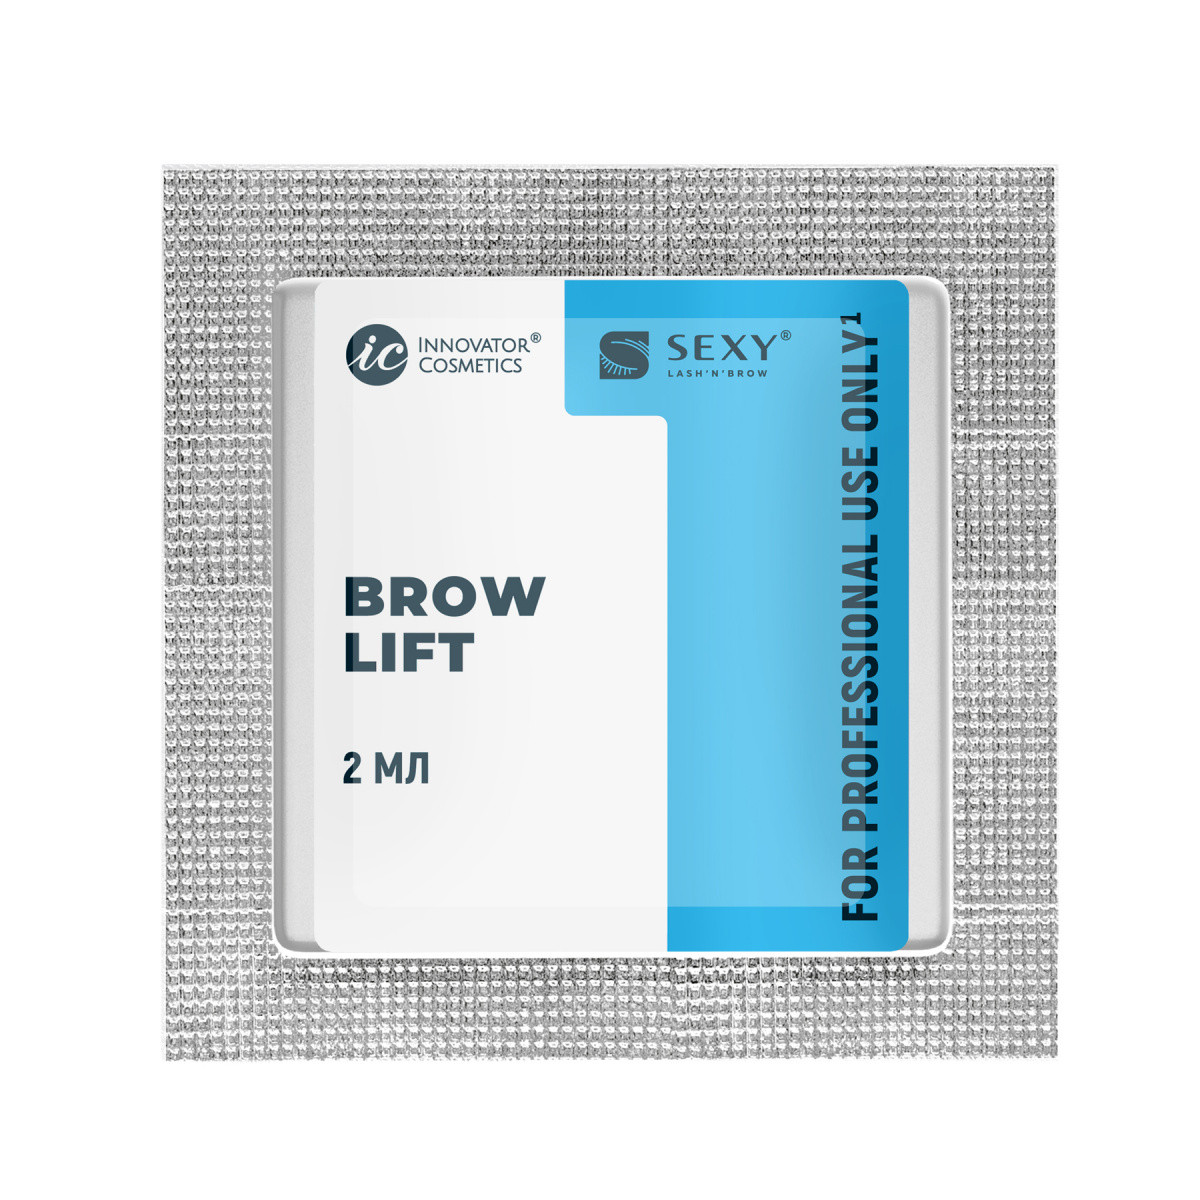 SEXY BROW PERM Саше с составом #1 для долговременной укладки бровей BROW LIFT, 2мл